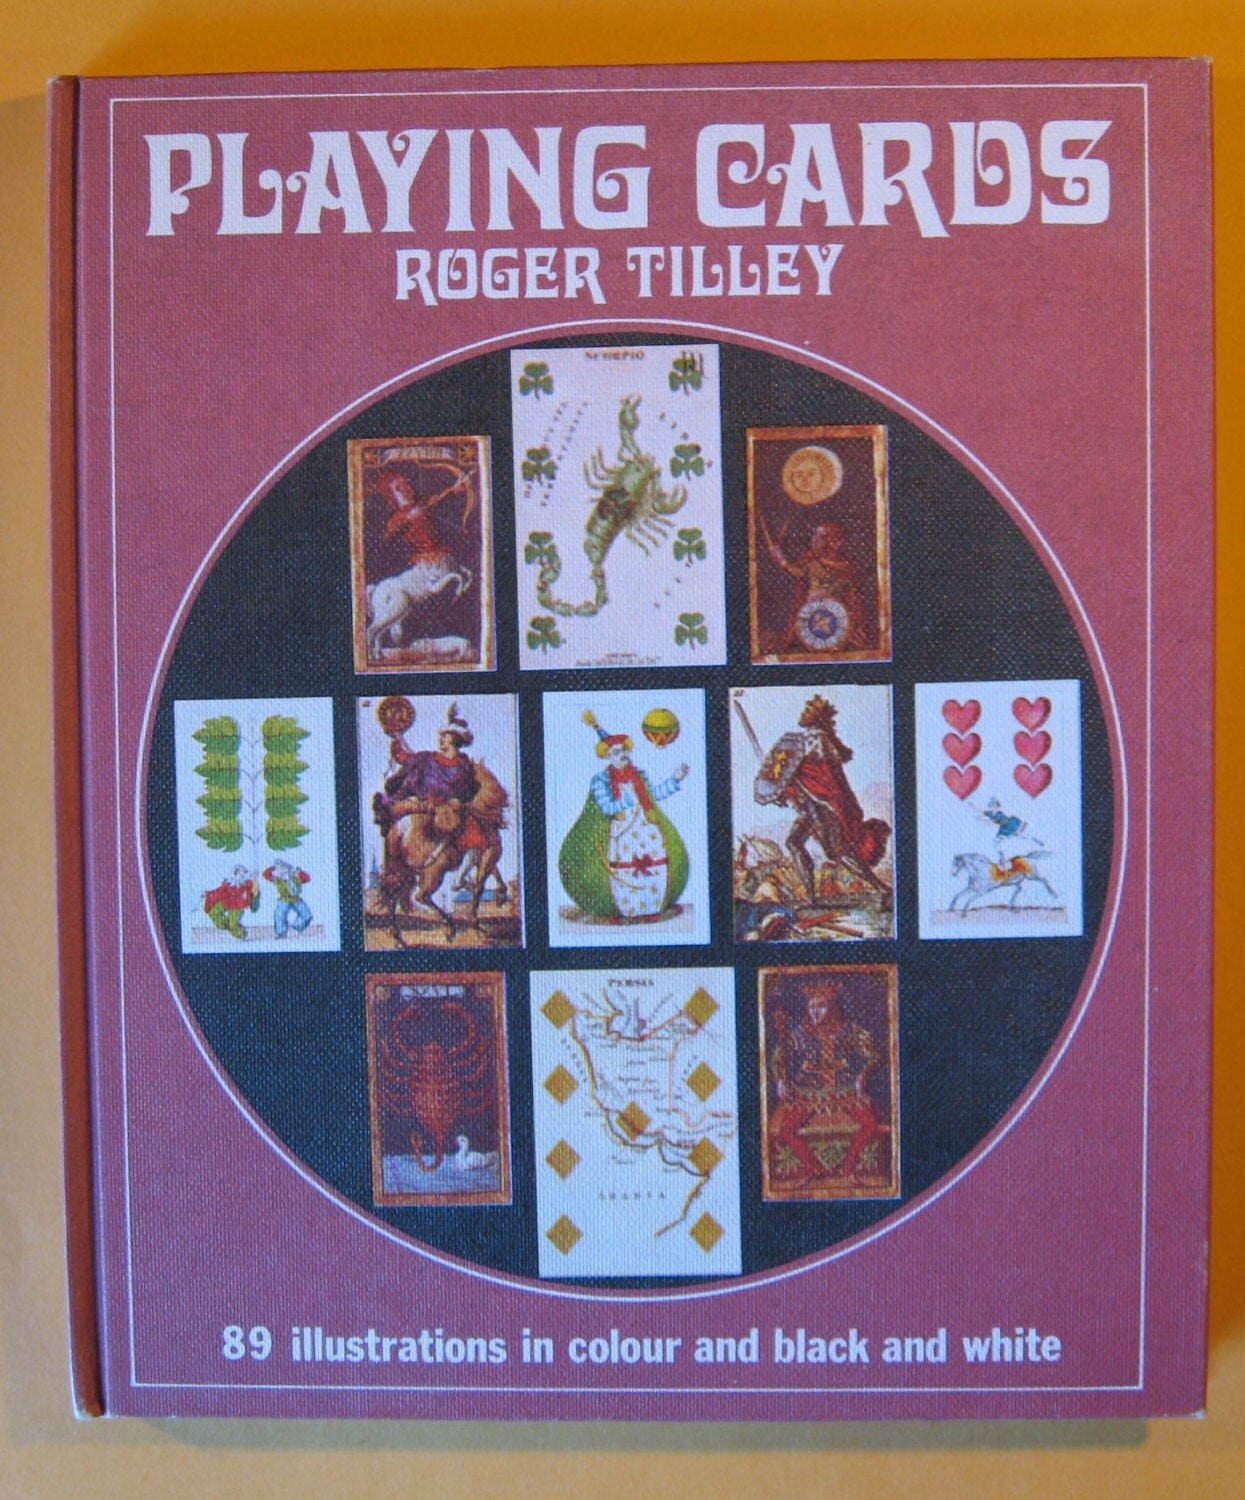 Cartes à jouer et tarots, Roger Tilley, 1969, jeux, voyance